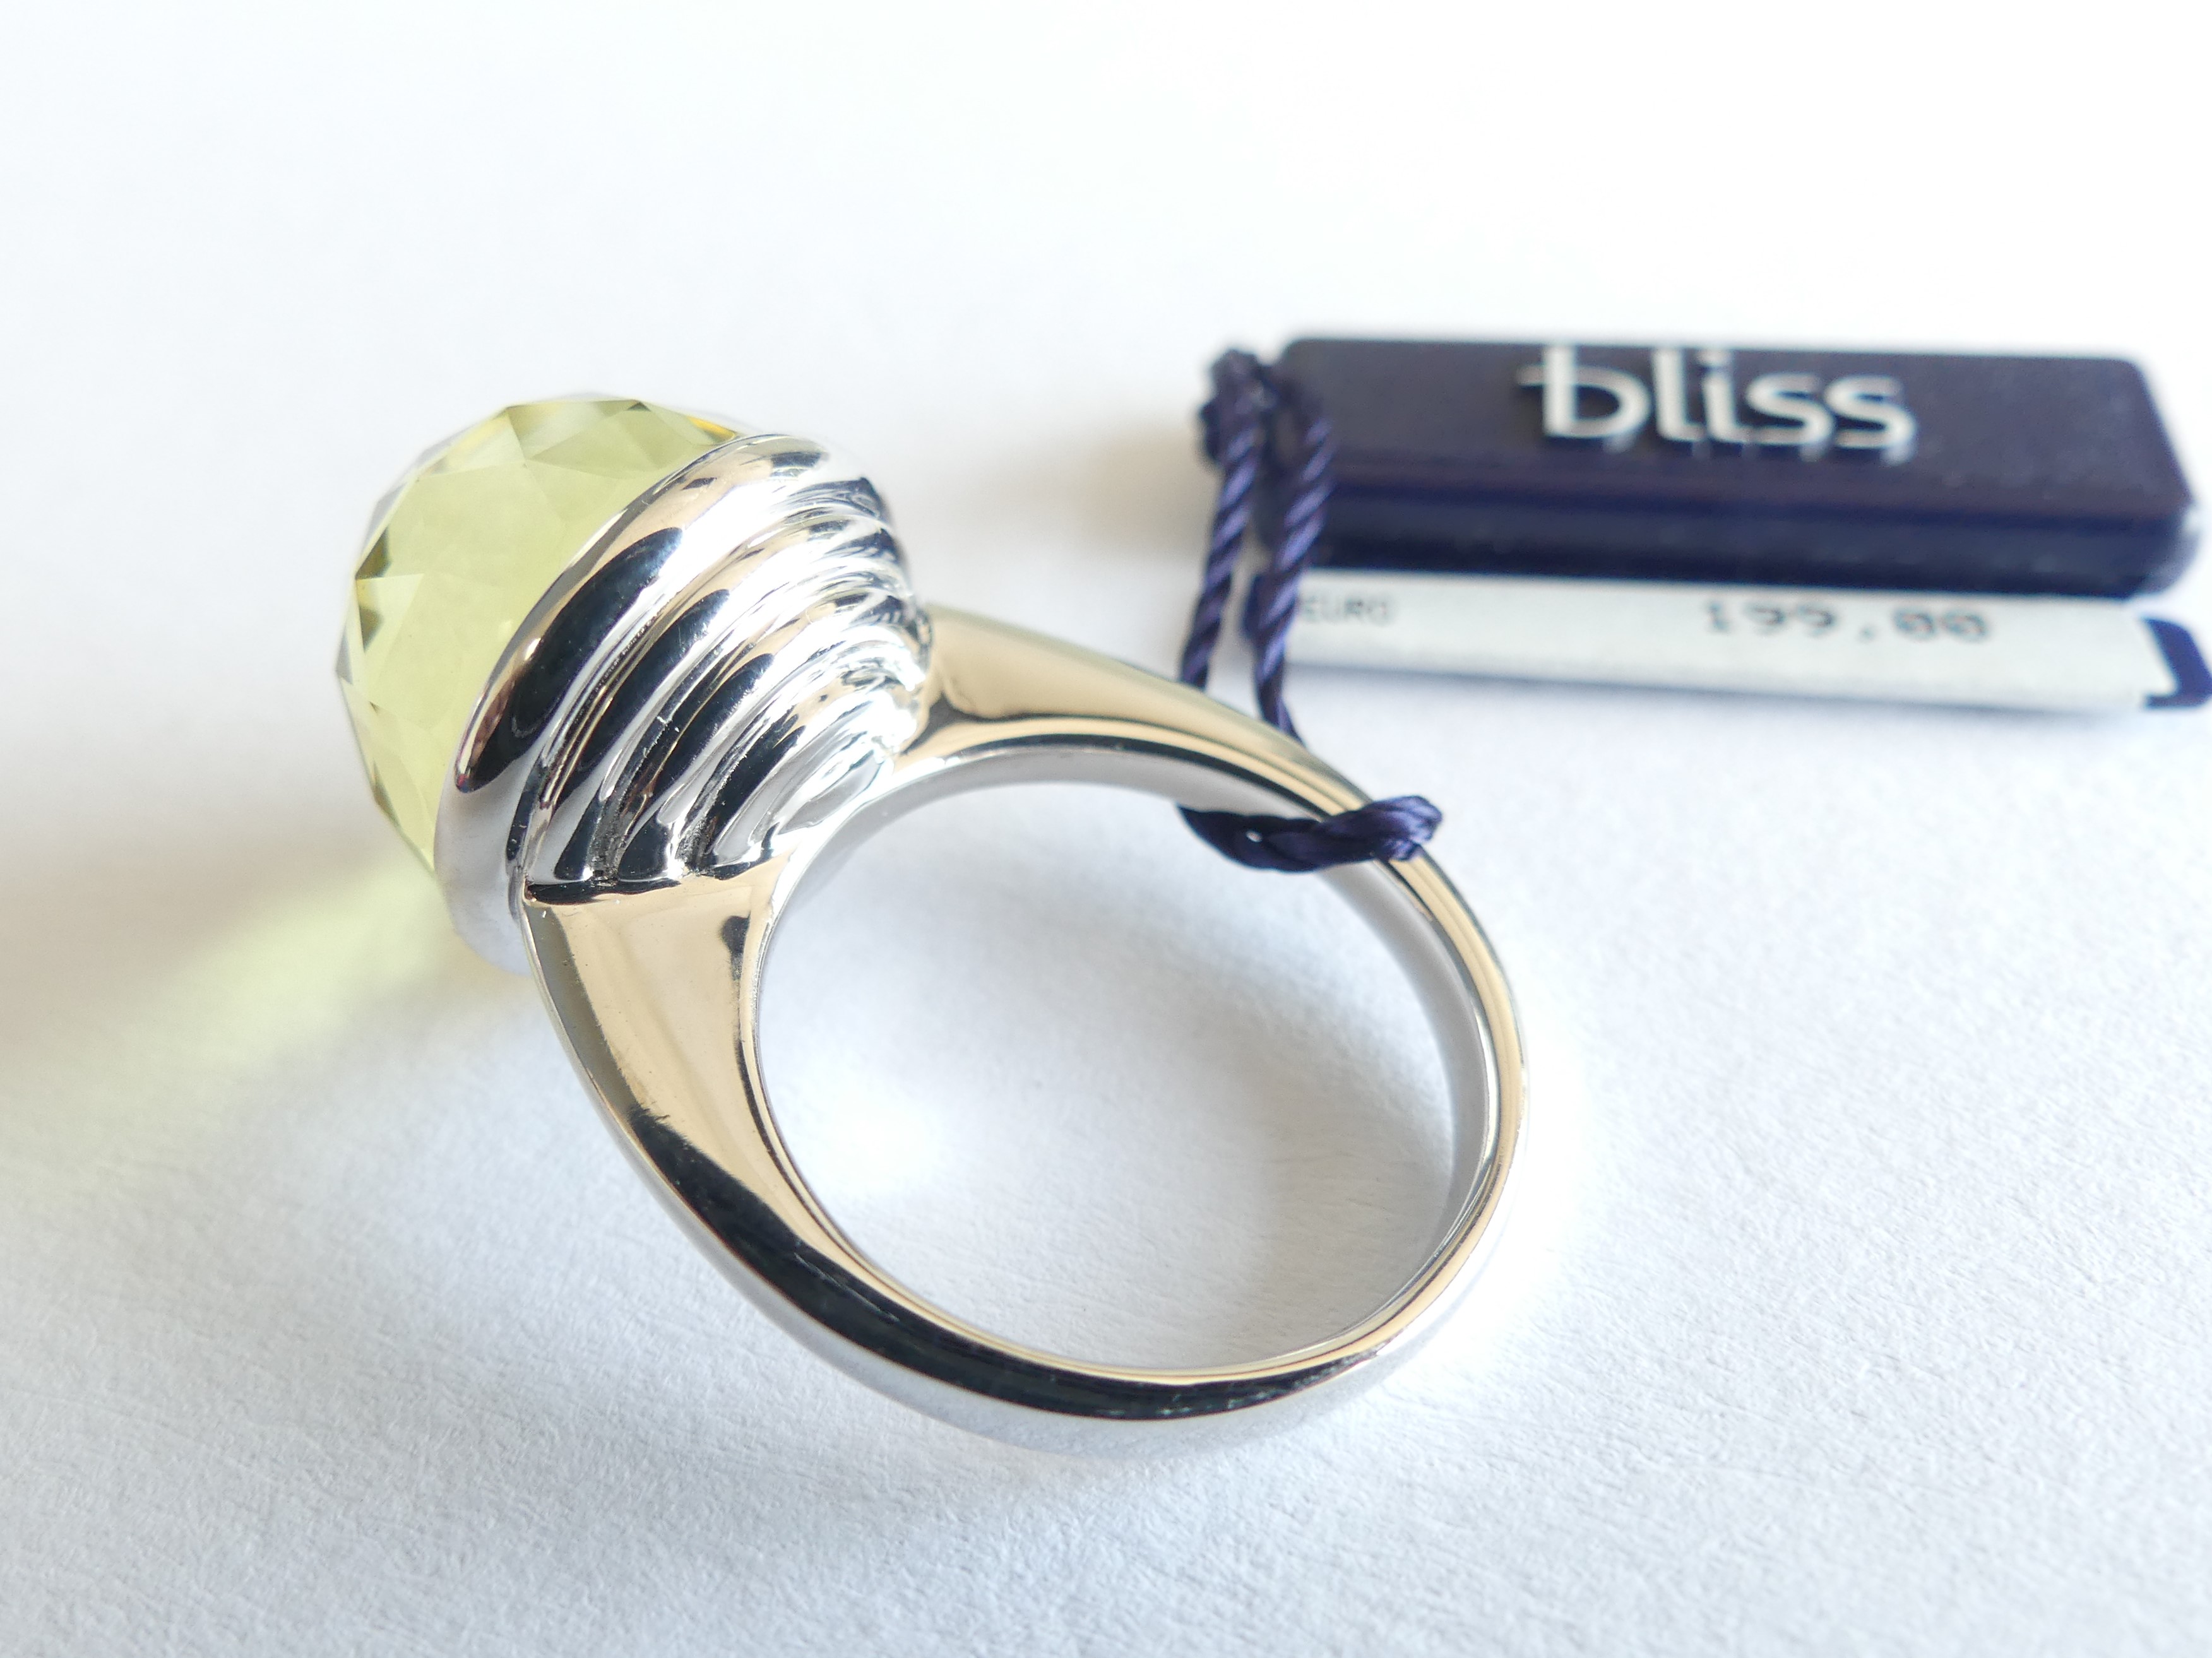 Bliss zilveren ring met groene zirkonia en klein diamantje, maat 14.5